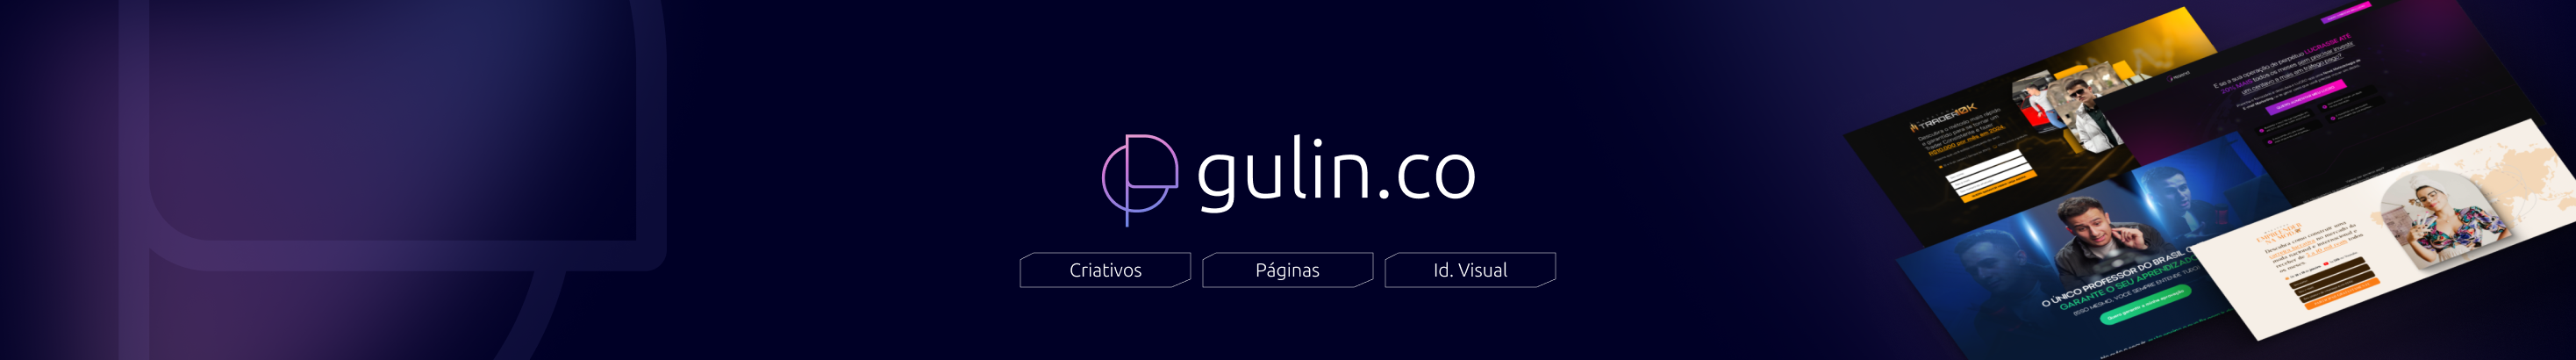 Pedro Gulin profil başlığı